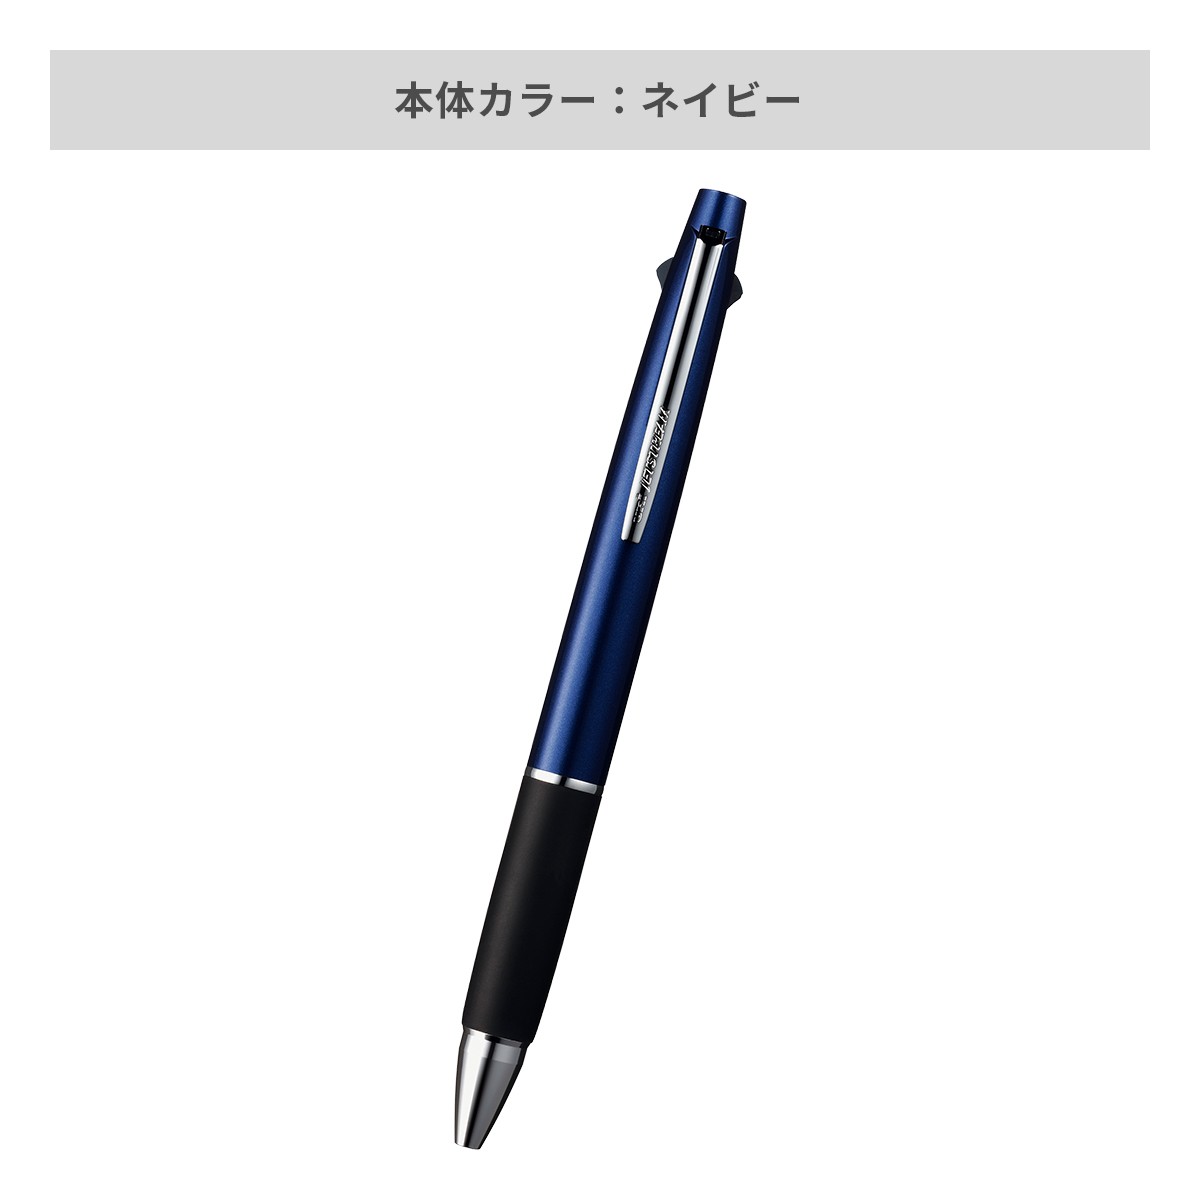 【短納期】三菱鉛筆 ジェットストリーム 多機能ペン 2&1 0.7mm【多機能ペン / レーザー彫刻】 画像4